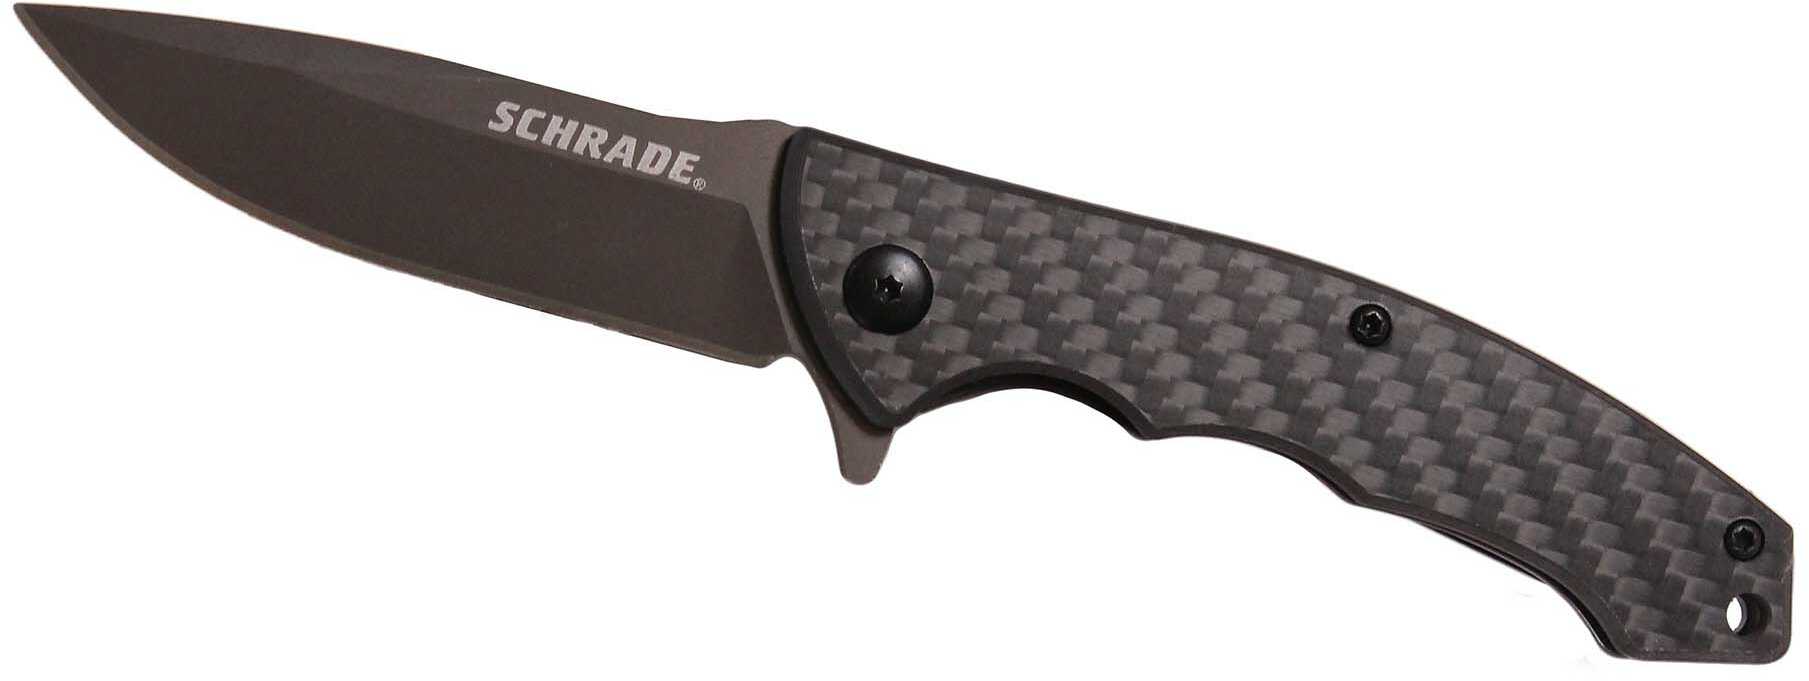 3" Folding Knife with Ultra-Glide Technology, Black